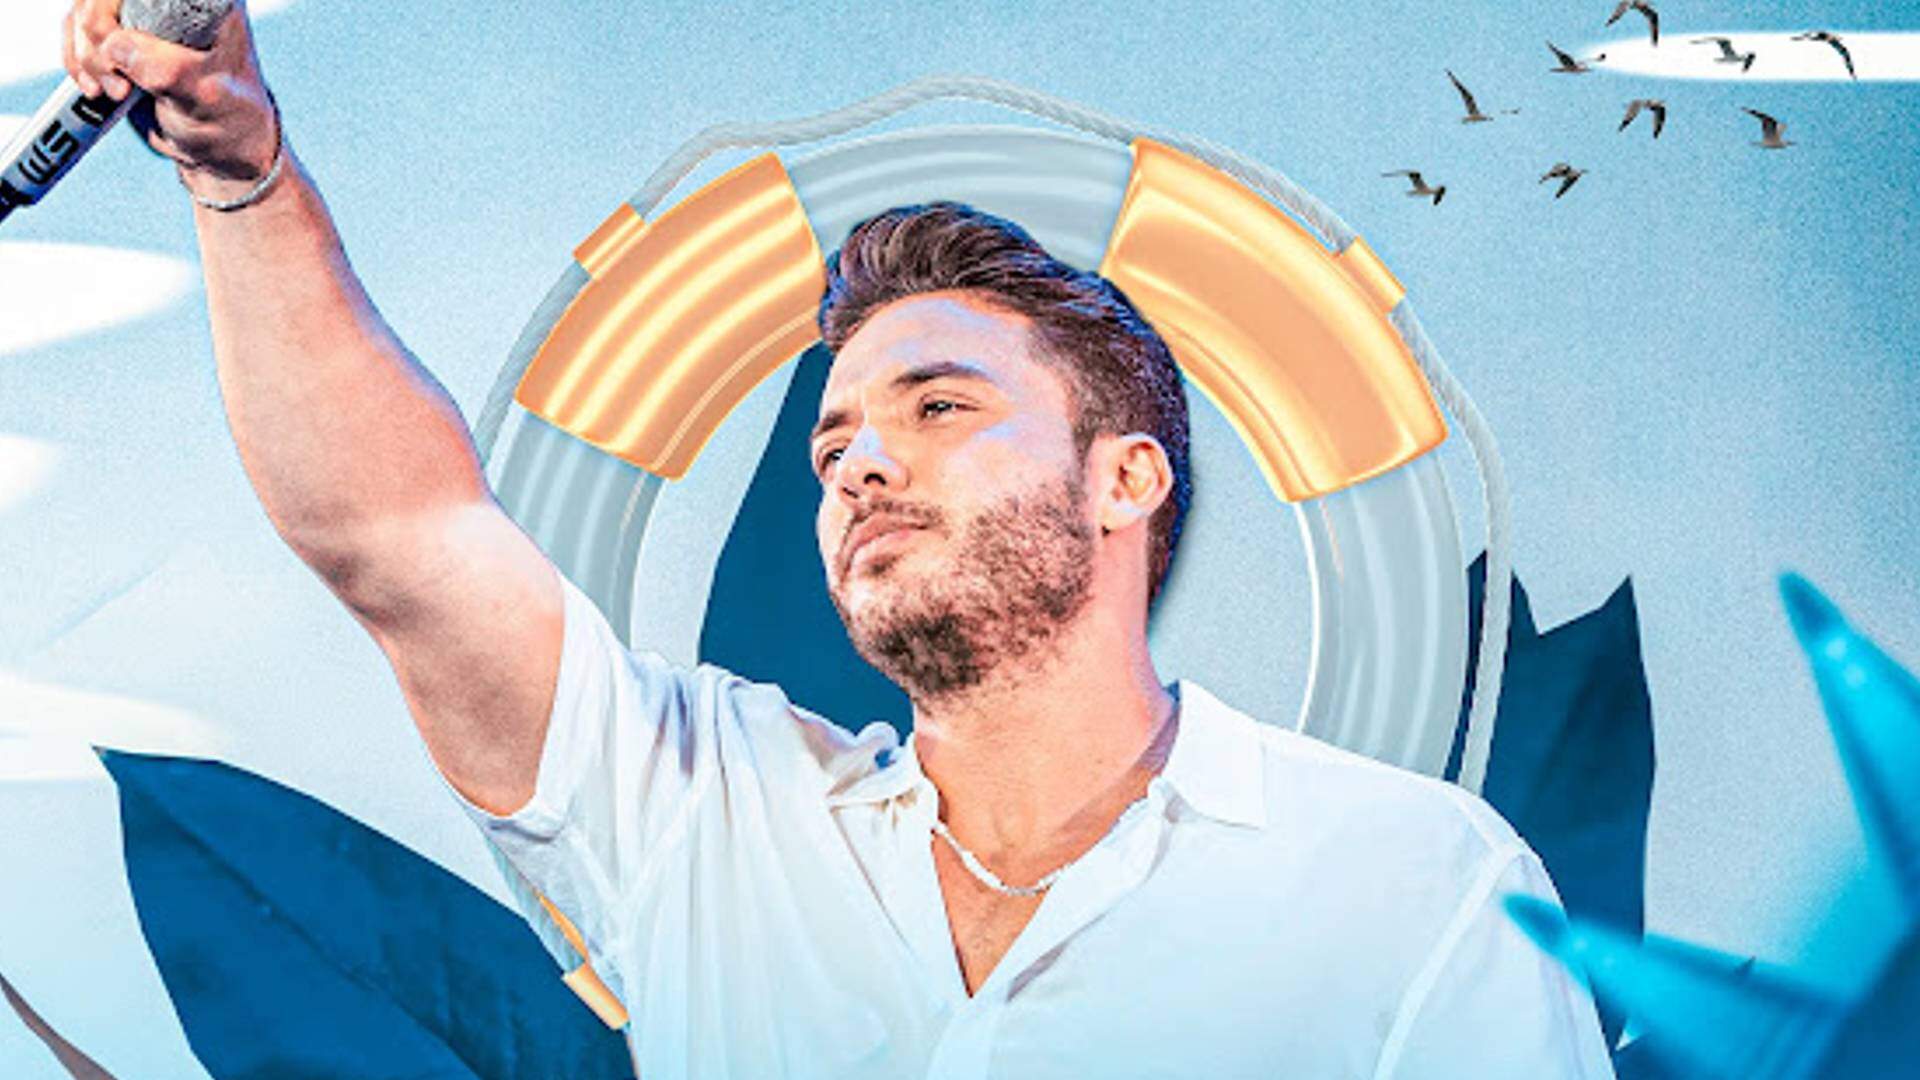 Wesley Safadão lança novos projetos musicais e fãs vão à loucura - Metropolitana FM